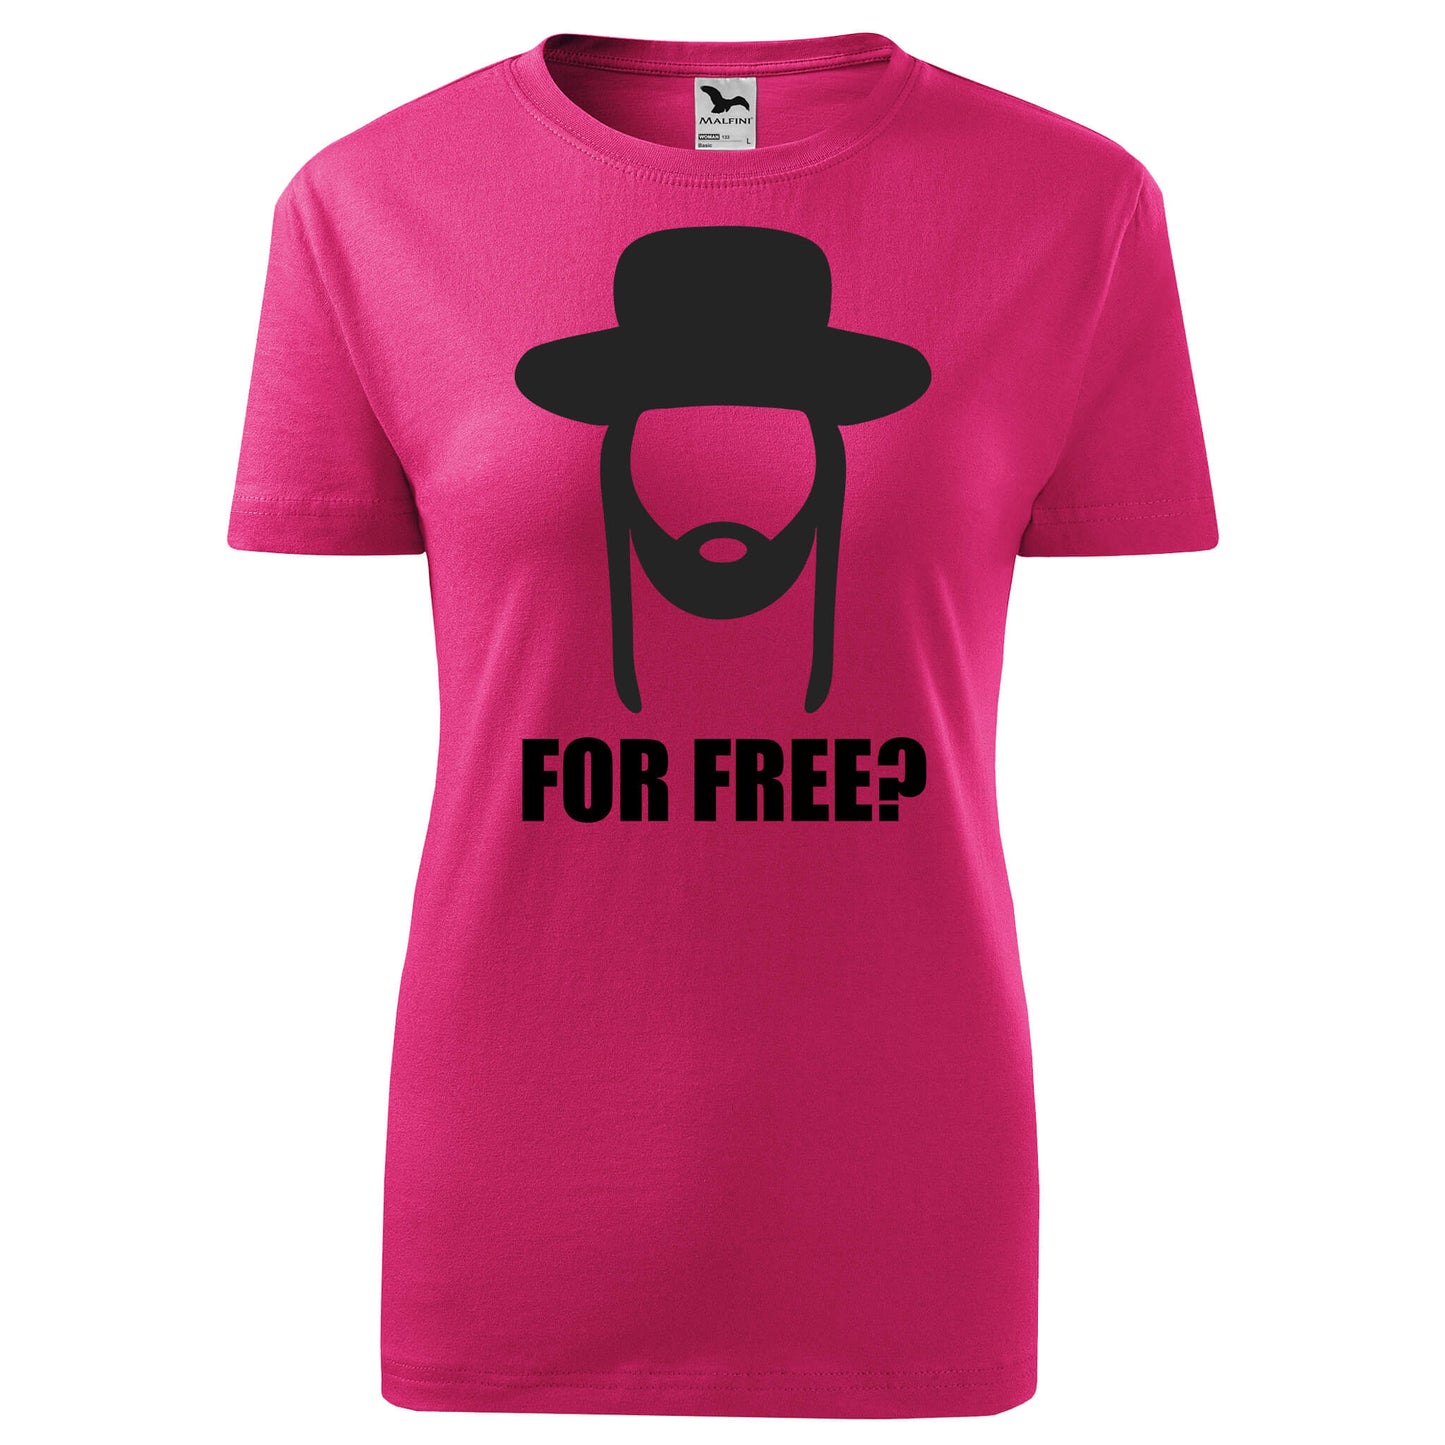 For free t-shirt - rvdesignprint